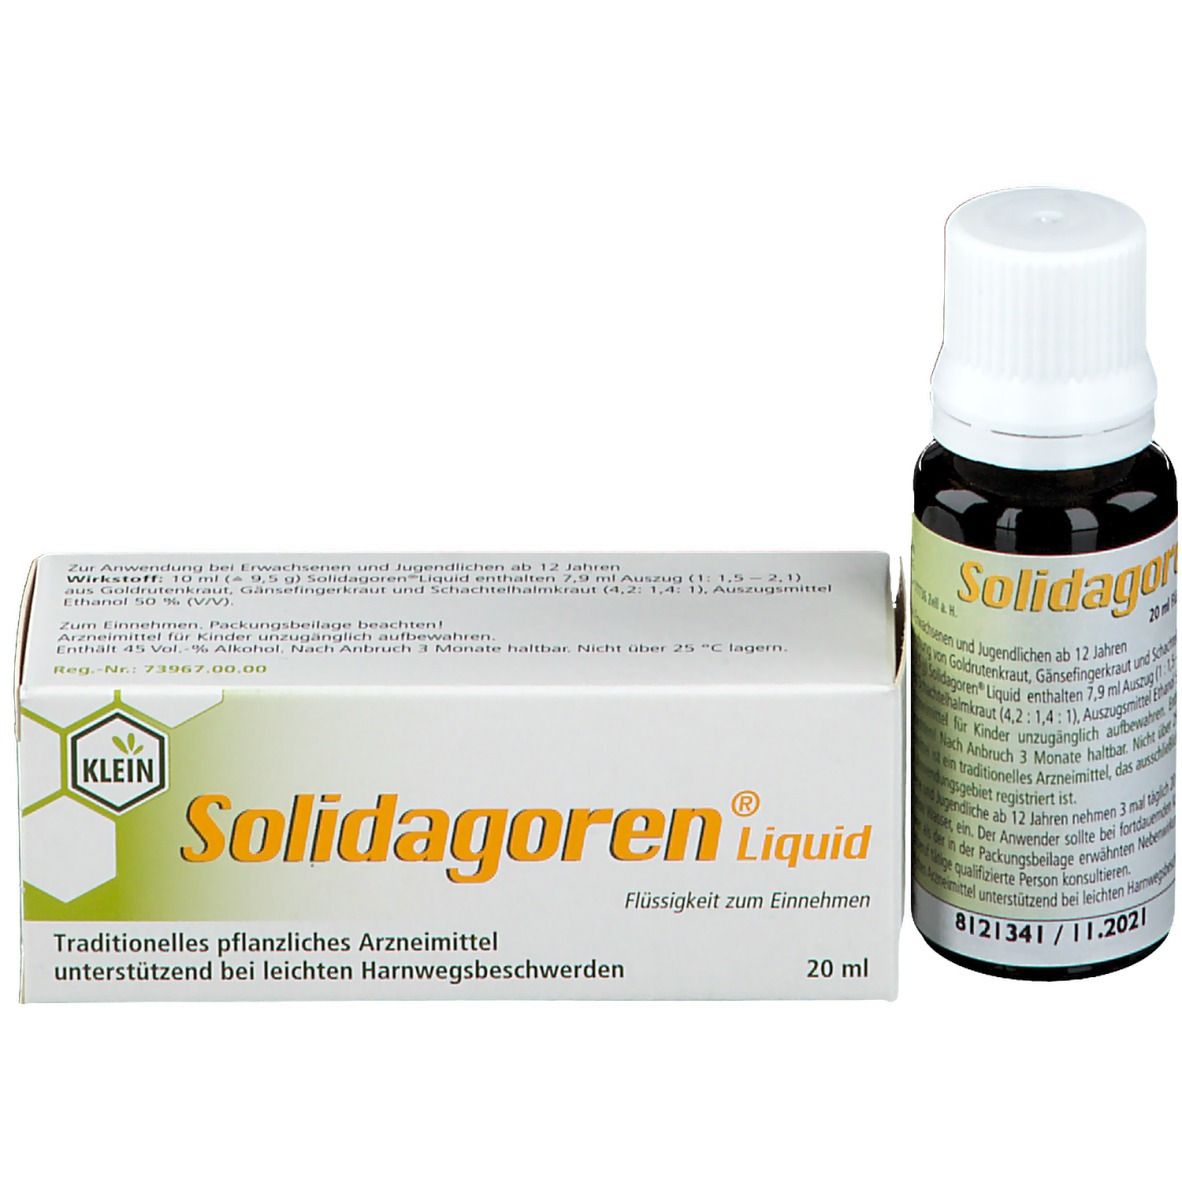 Solidagoren® Liquid